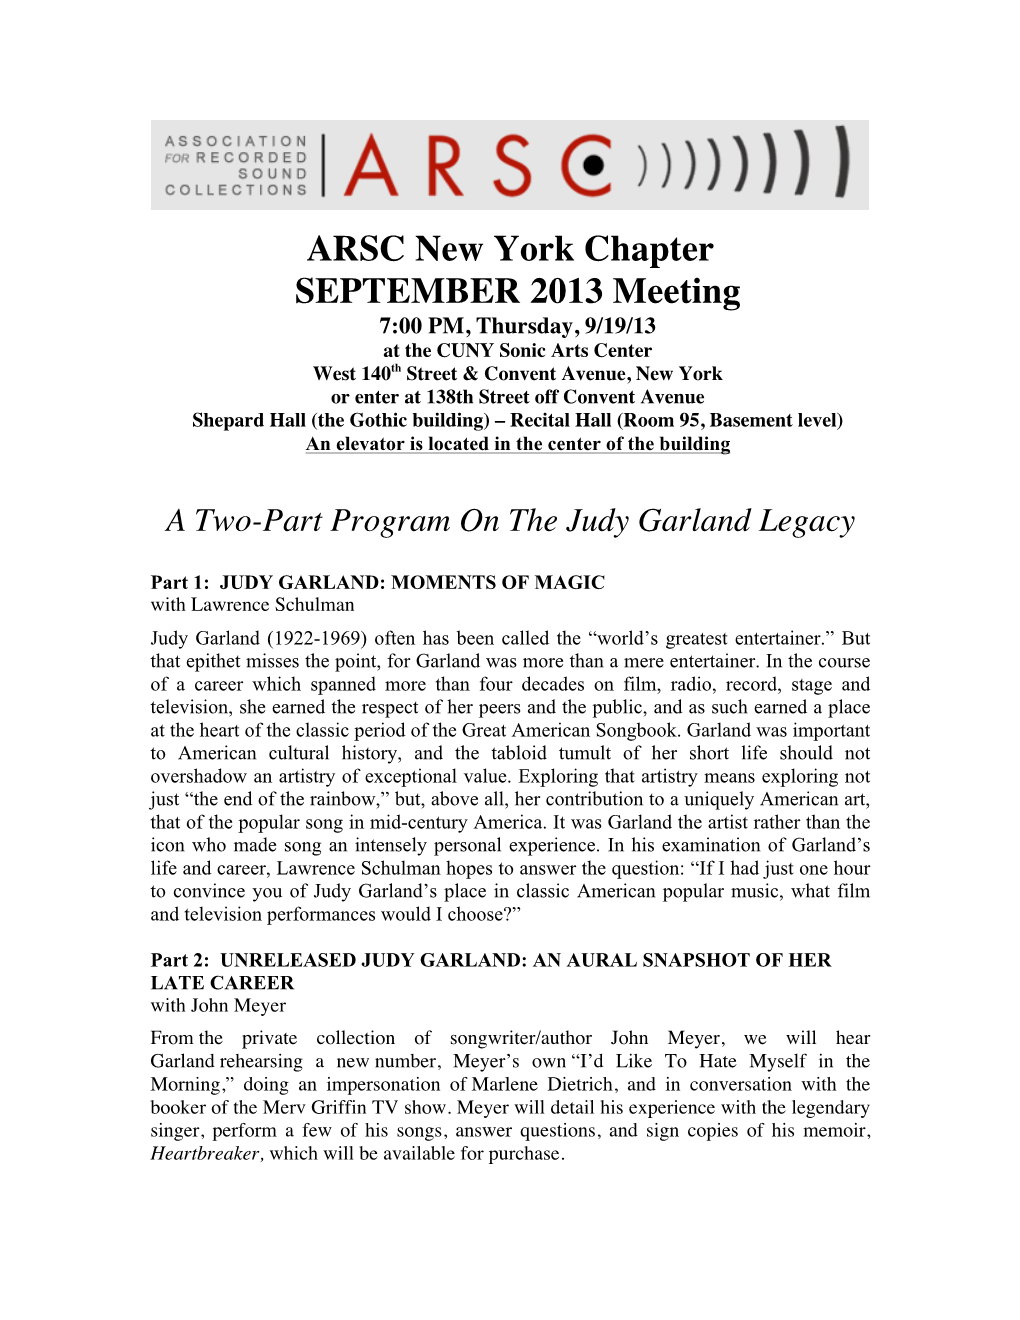 ARSC New York Chapter SEPTEMBER 2013 Meeting